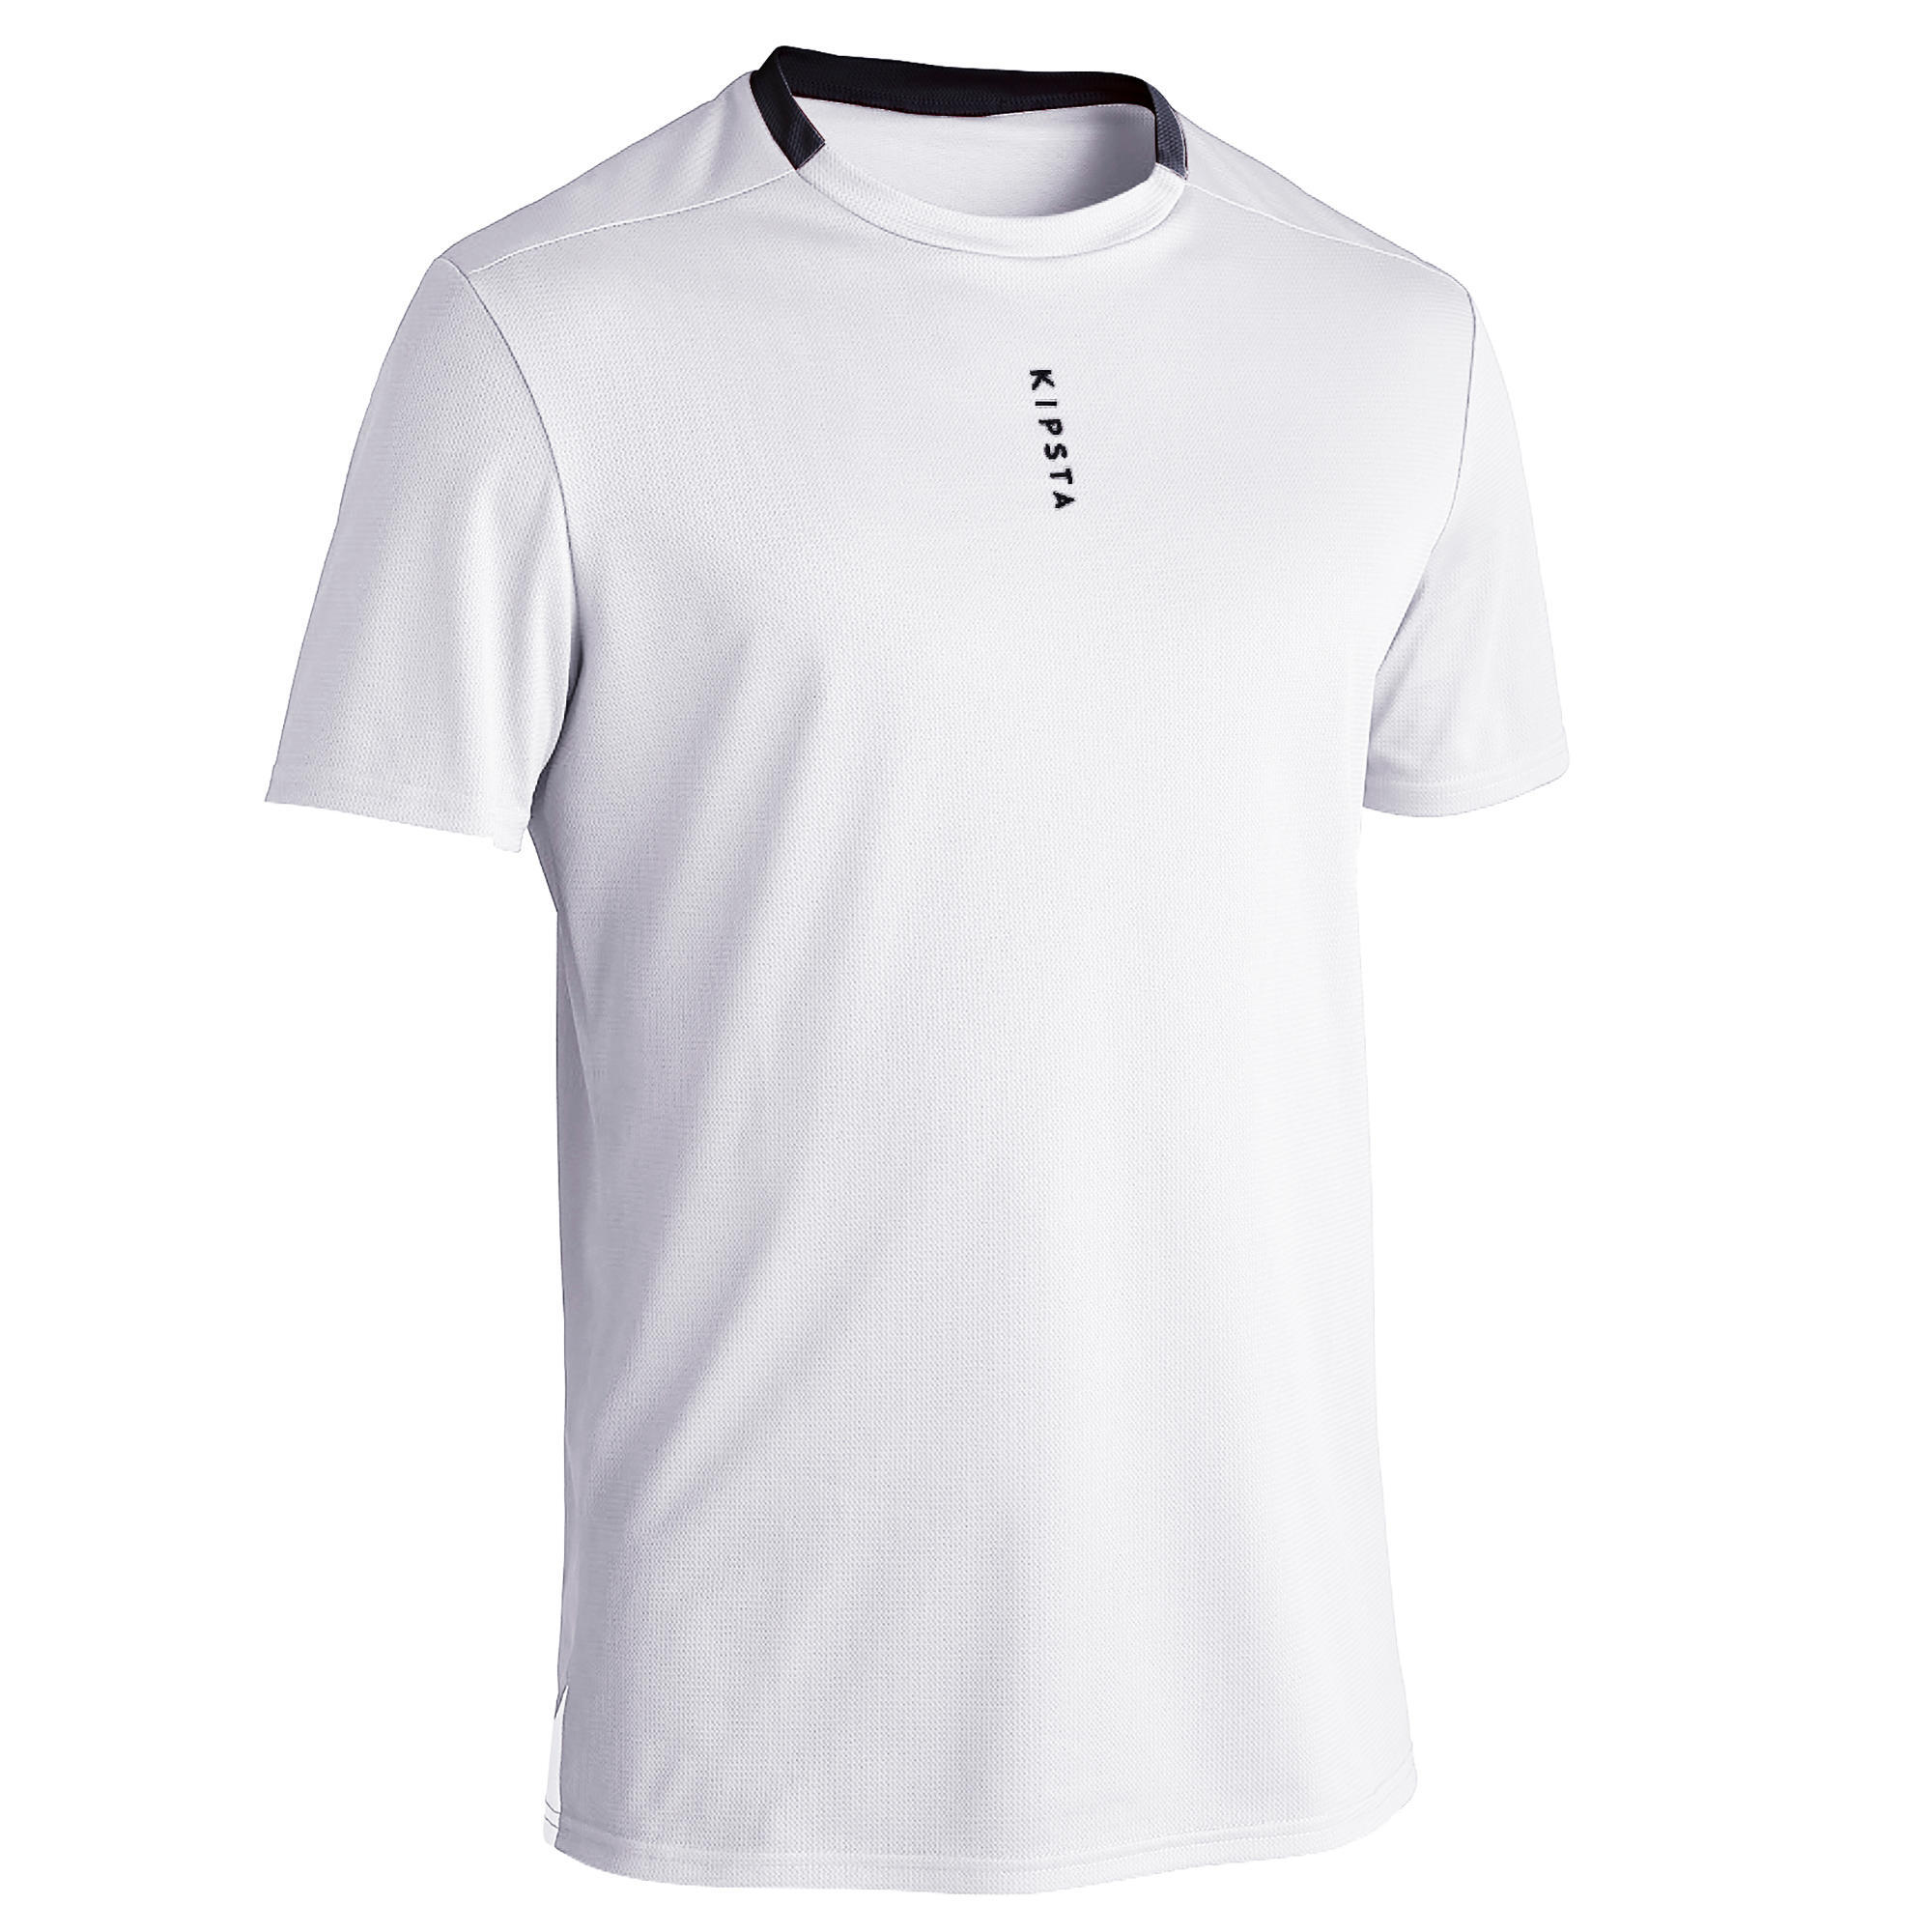 Adult Football Shirt Essential Club - White 12/29